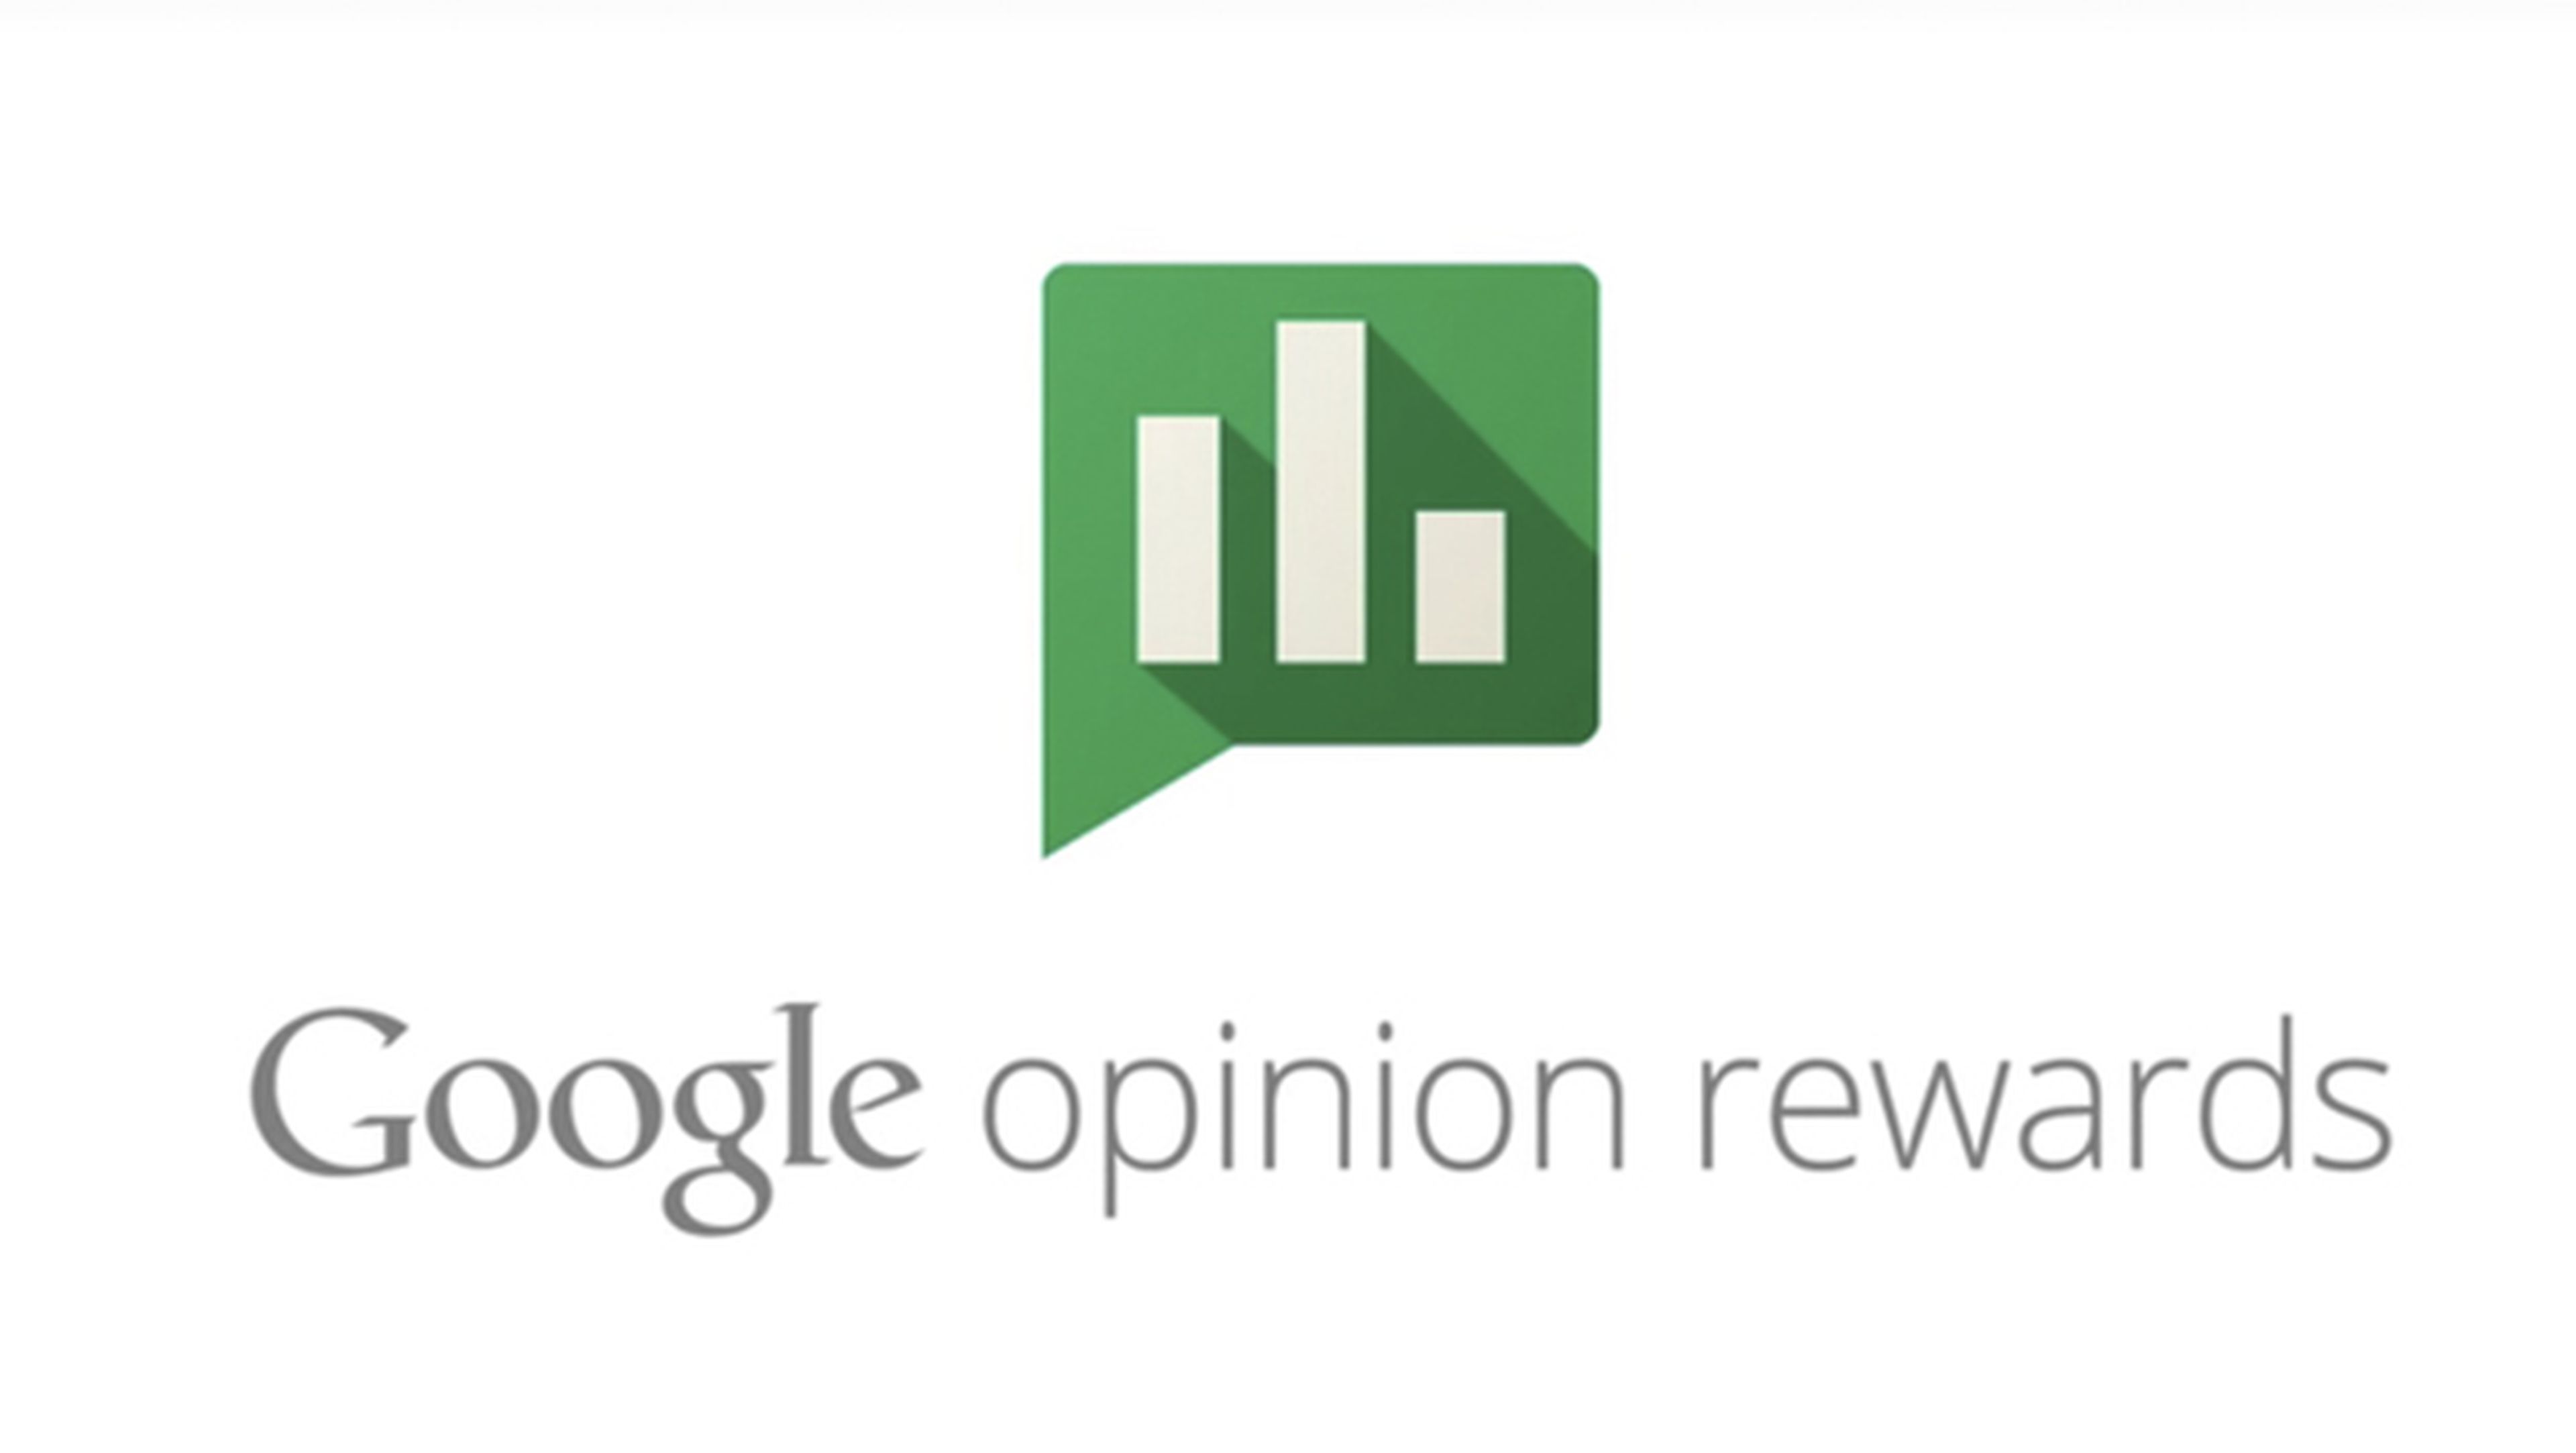 Google Opinion Rewards, gana dinero respondiendo encuestas